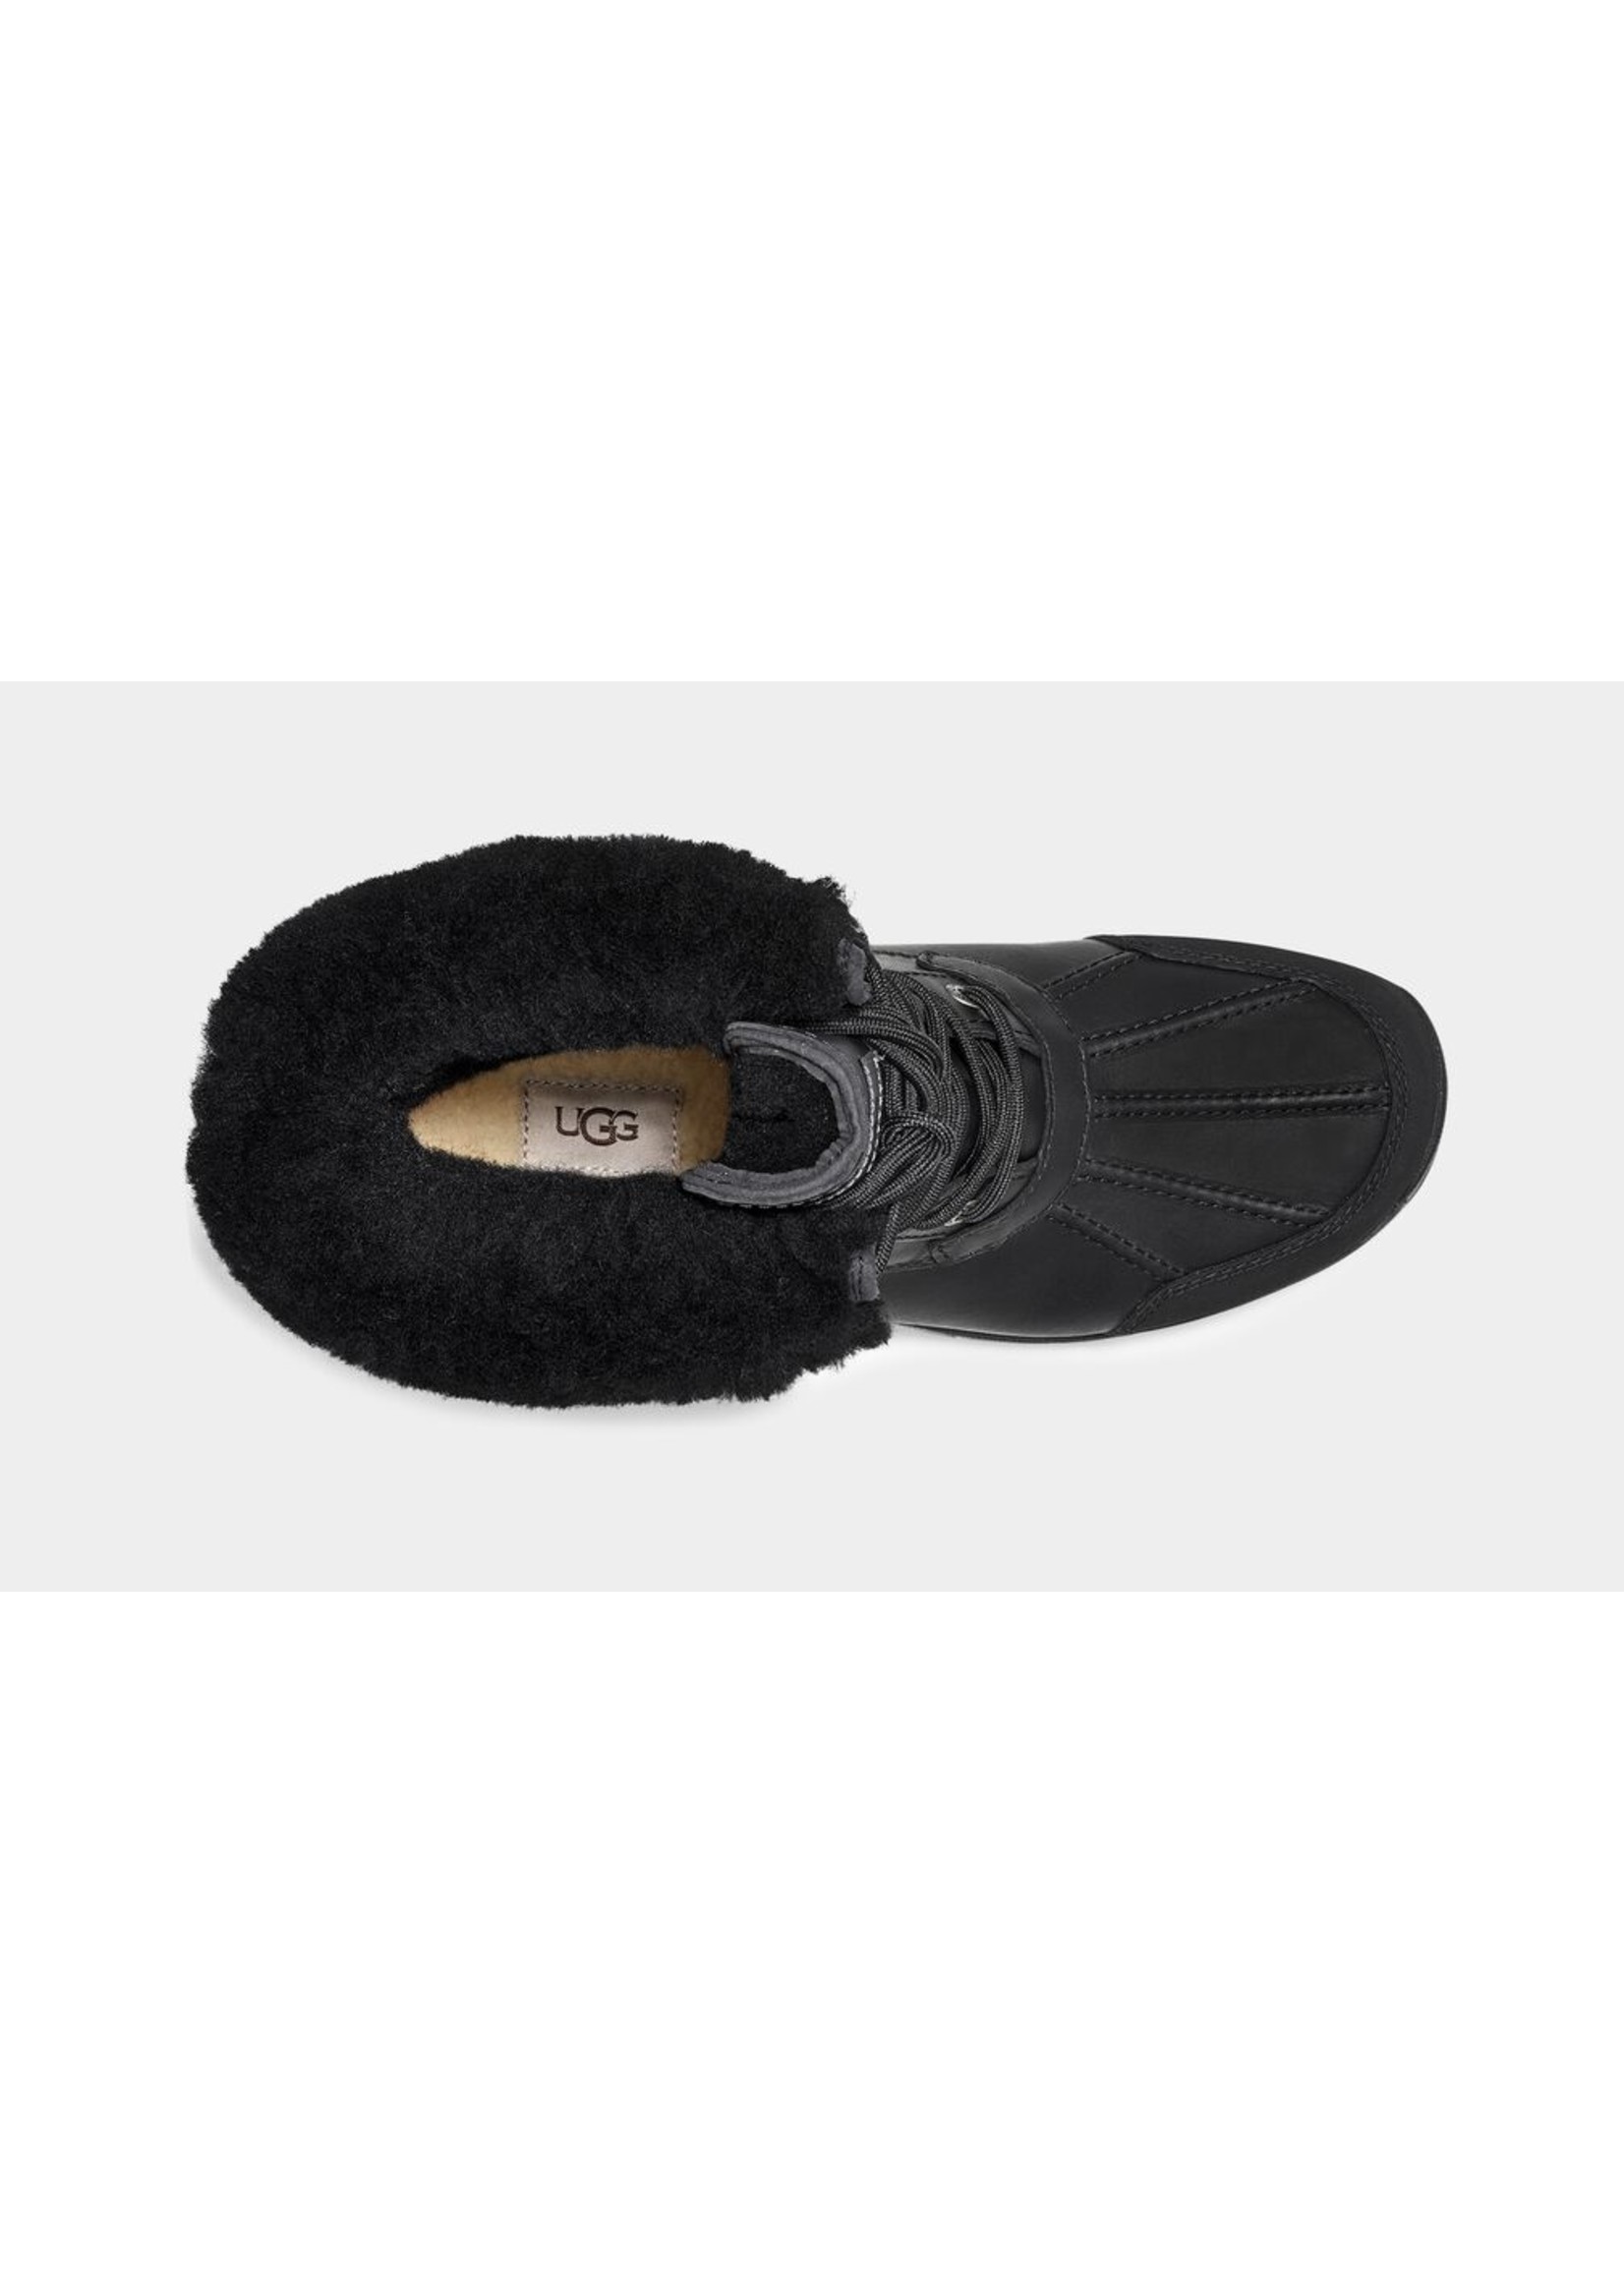 UGG Men's BUTTE Fur Winter Boots